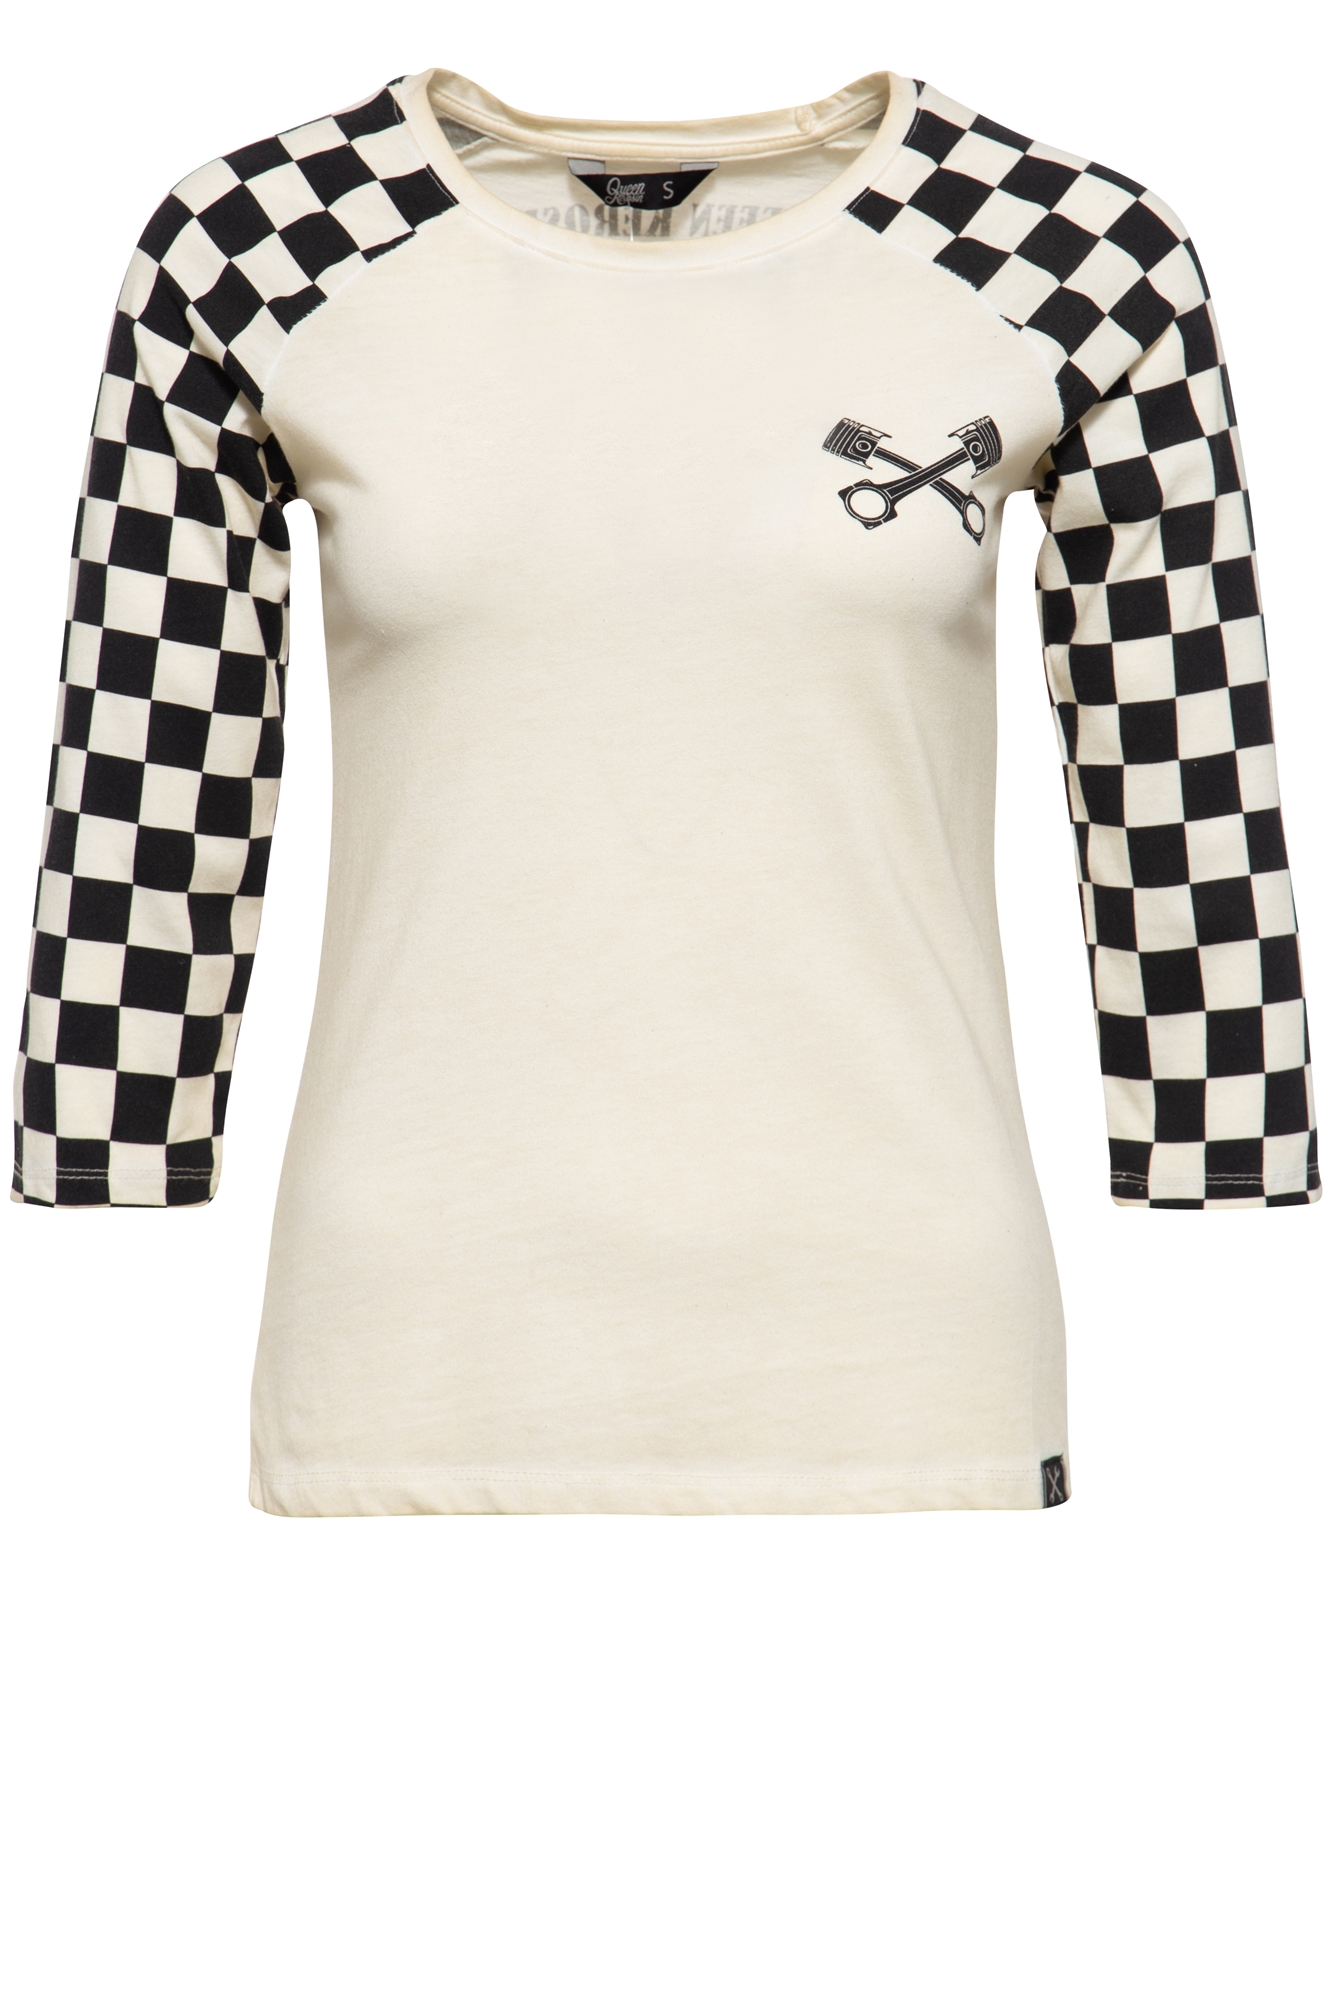 Queen Kerosin 3/4-Sleeve Shirt - Speedshop 3XL